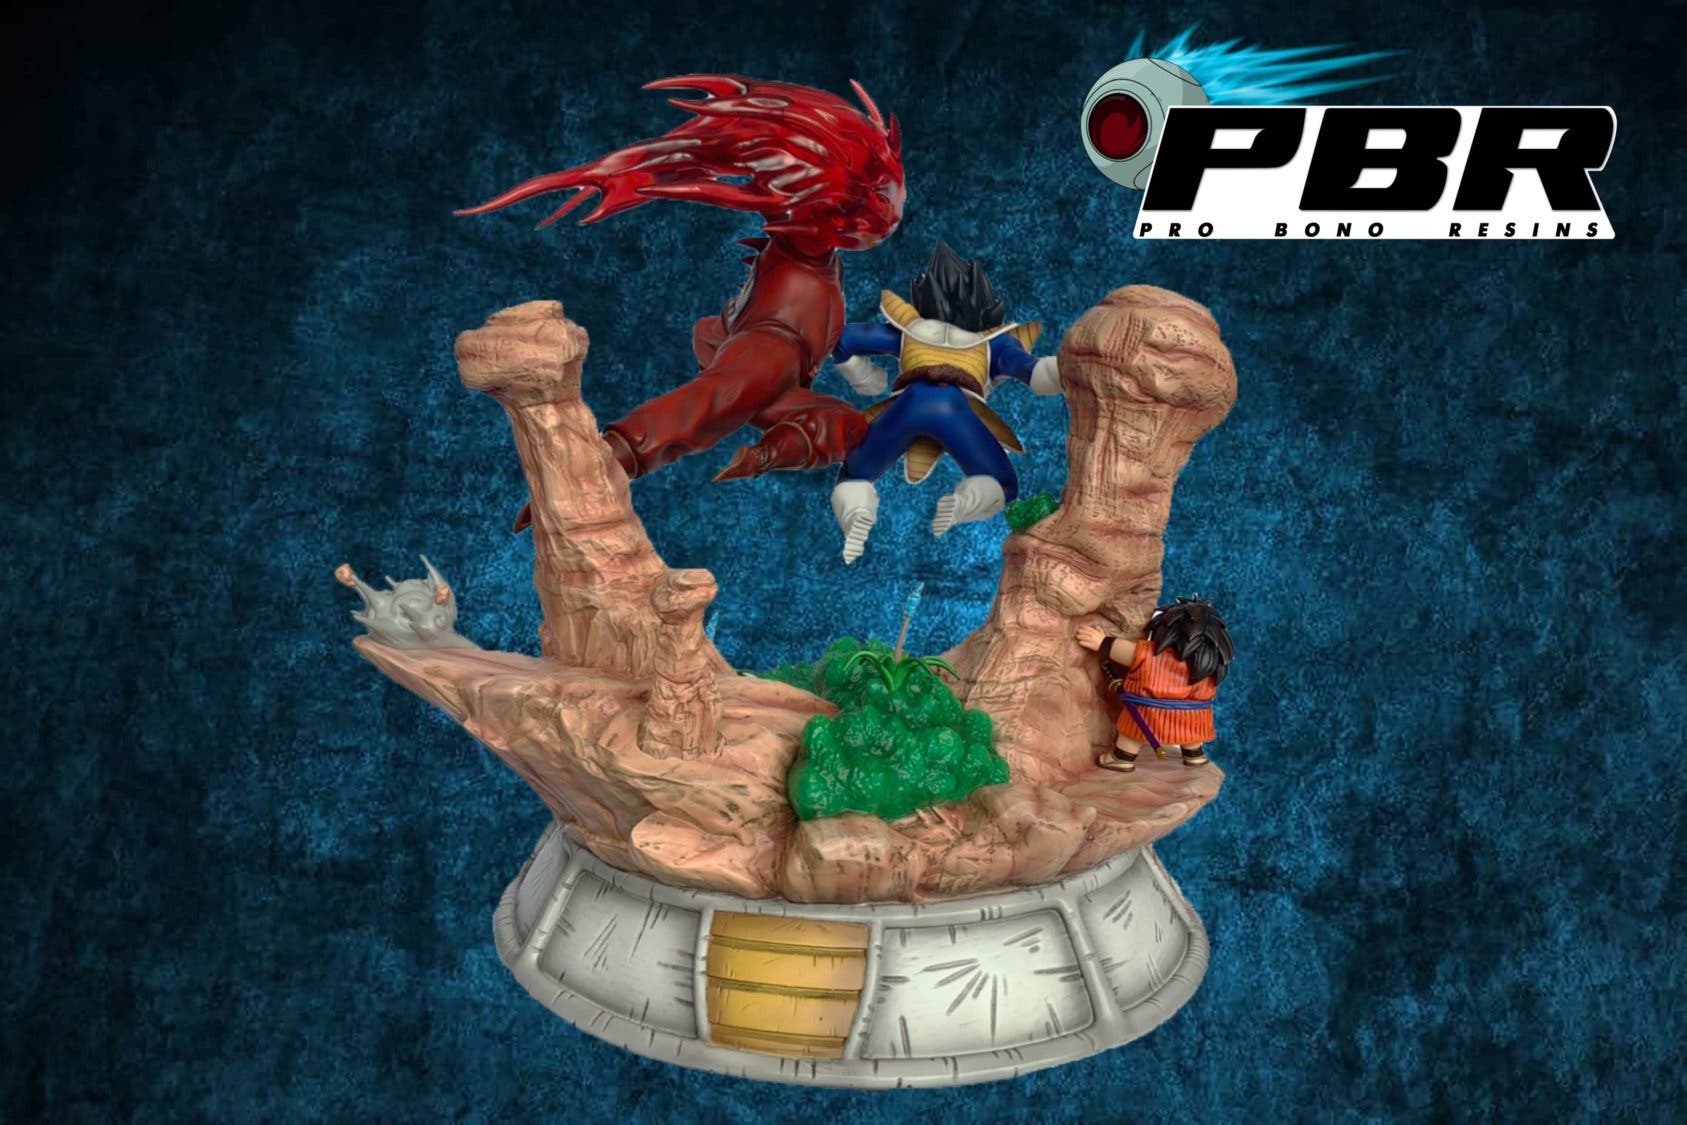 Dragon Ball: Imágenes exclusivas de la figura de Goku y Vegeta de Pro Bono  Resins